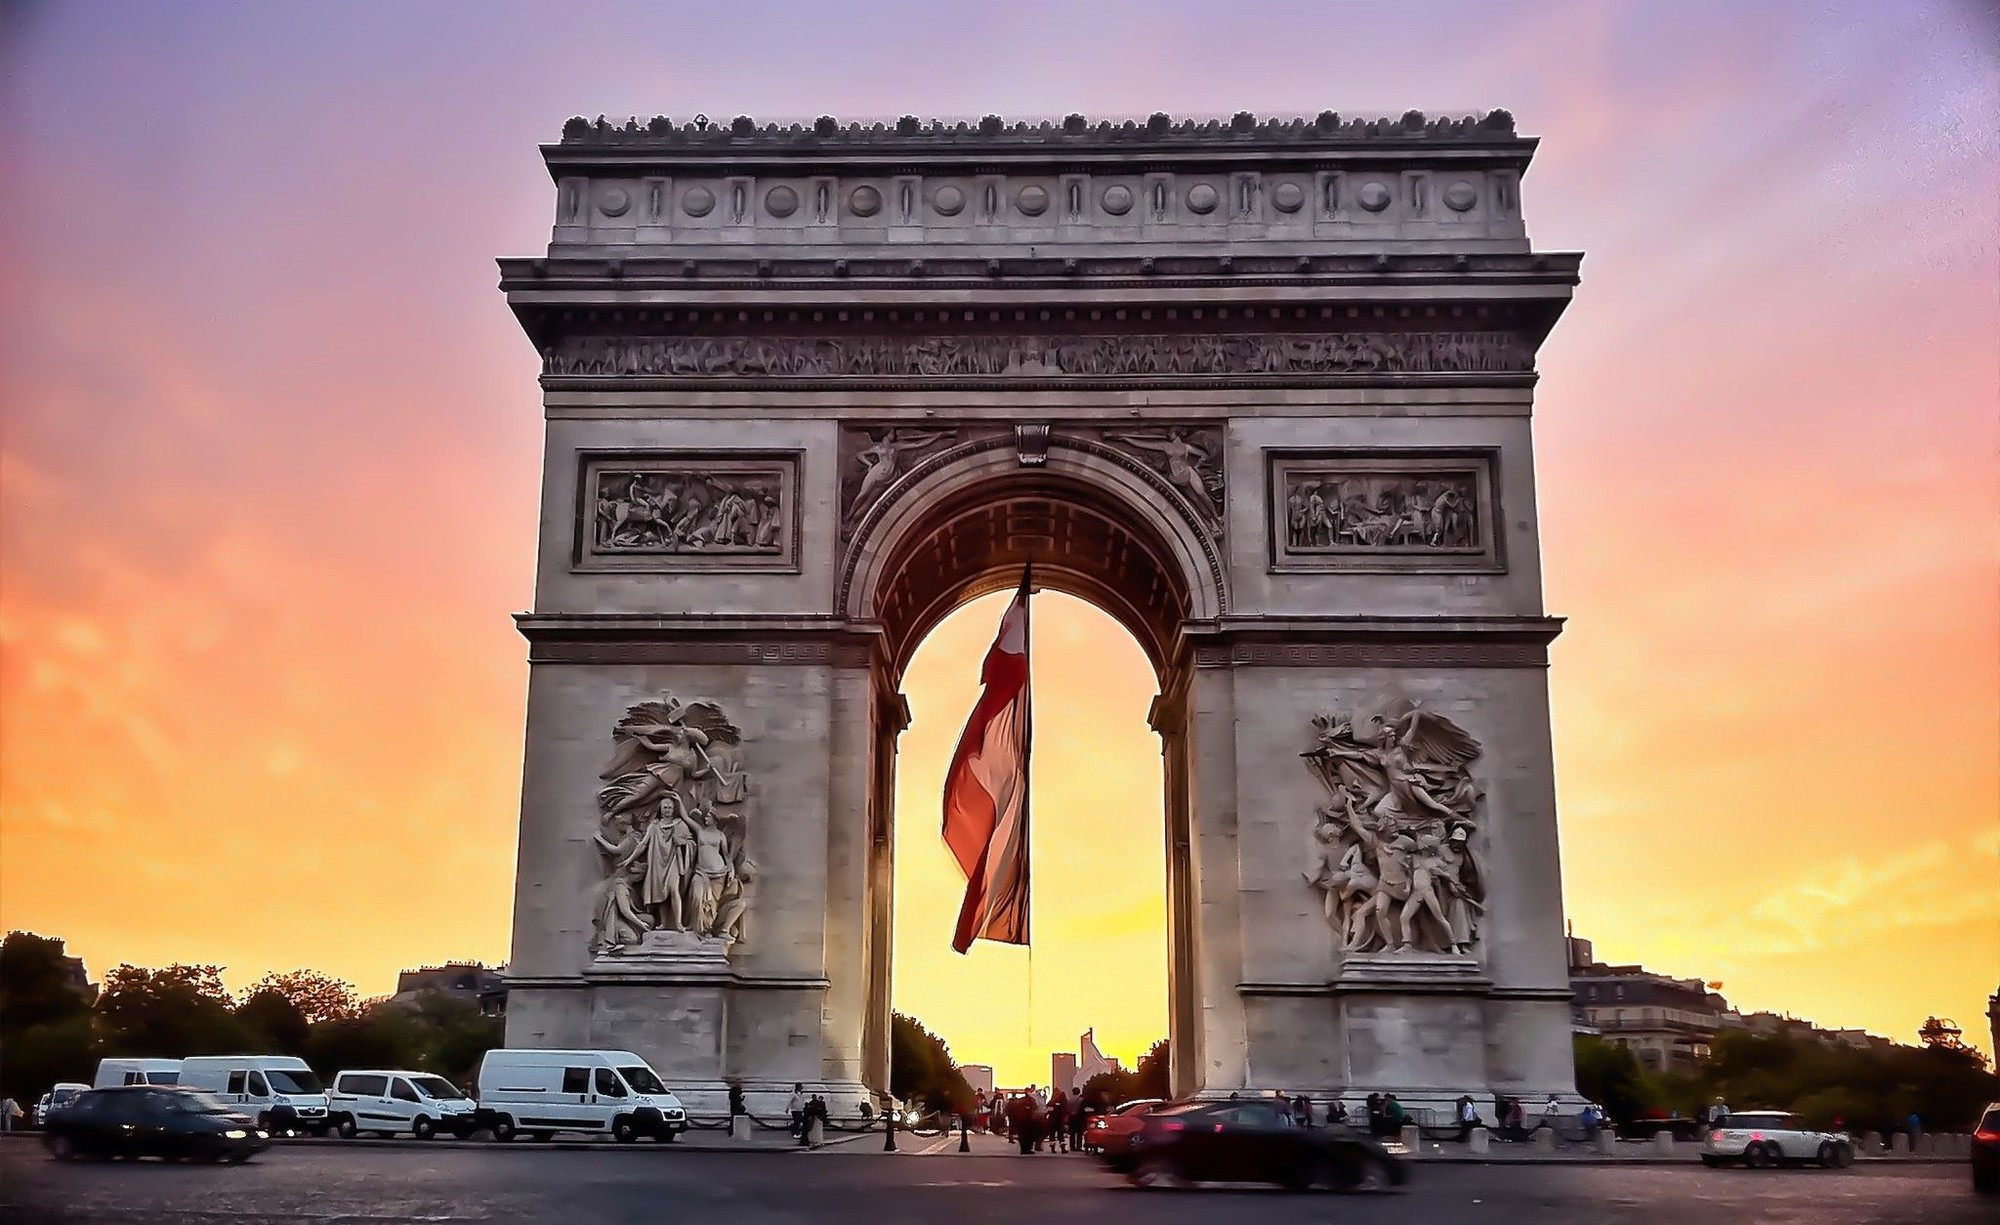 Tham quan đại lộ Champs-Elysees nổi tiếng của thủ đô Paris hoa lệ - ảnh 4